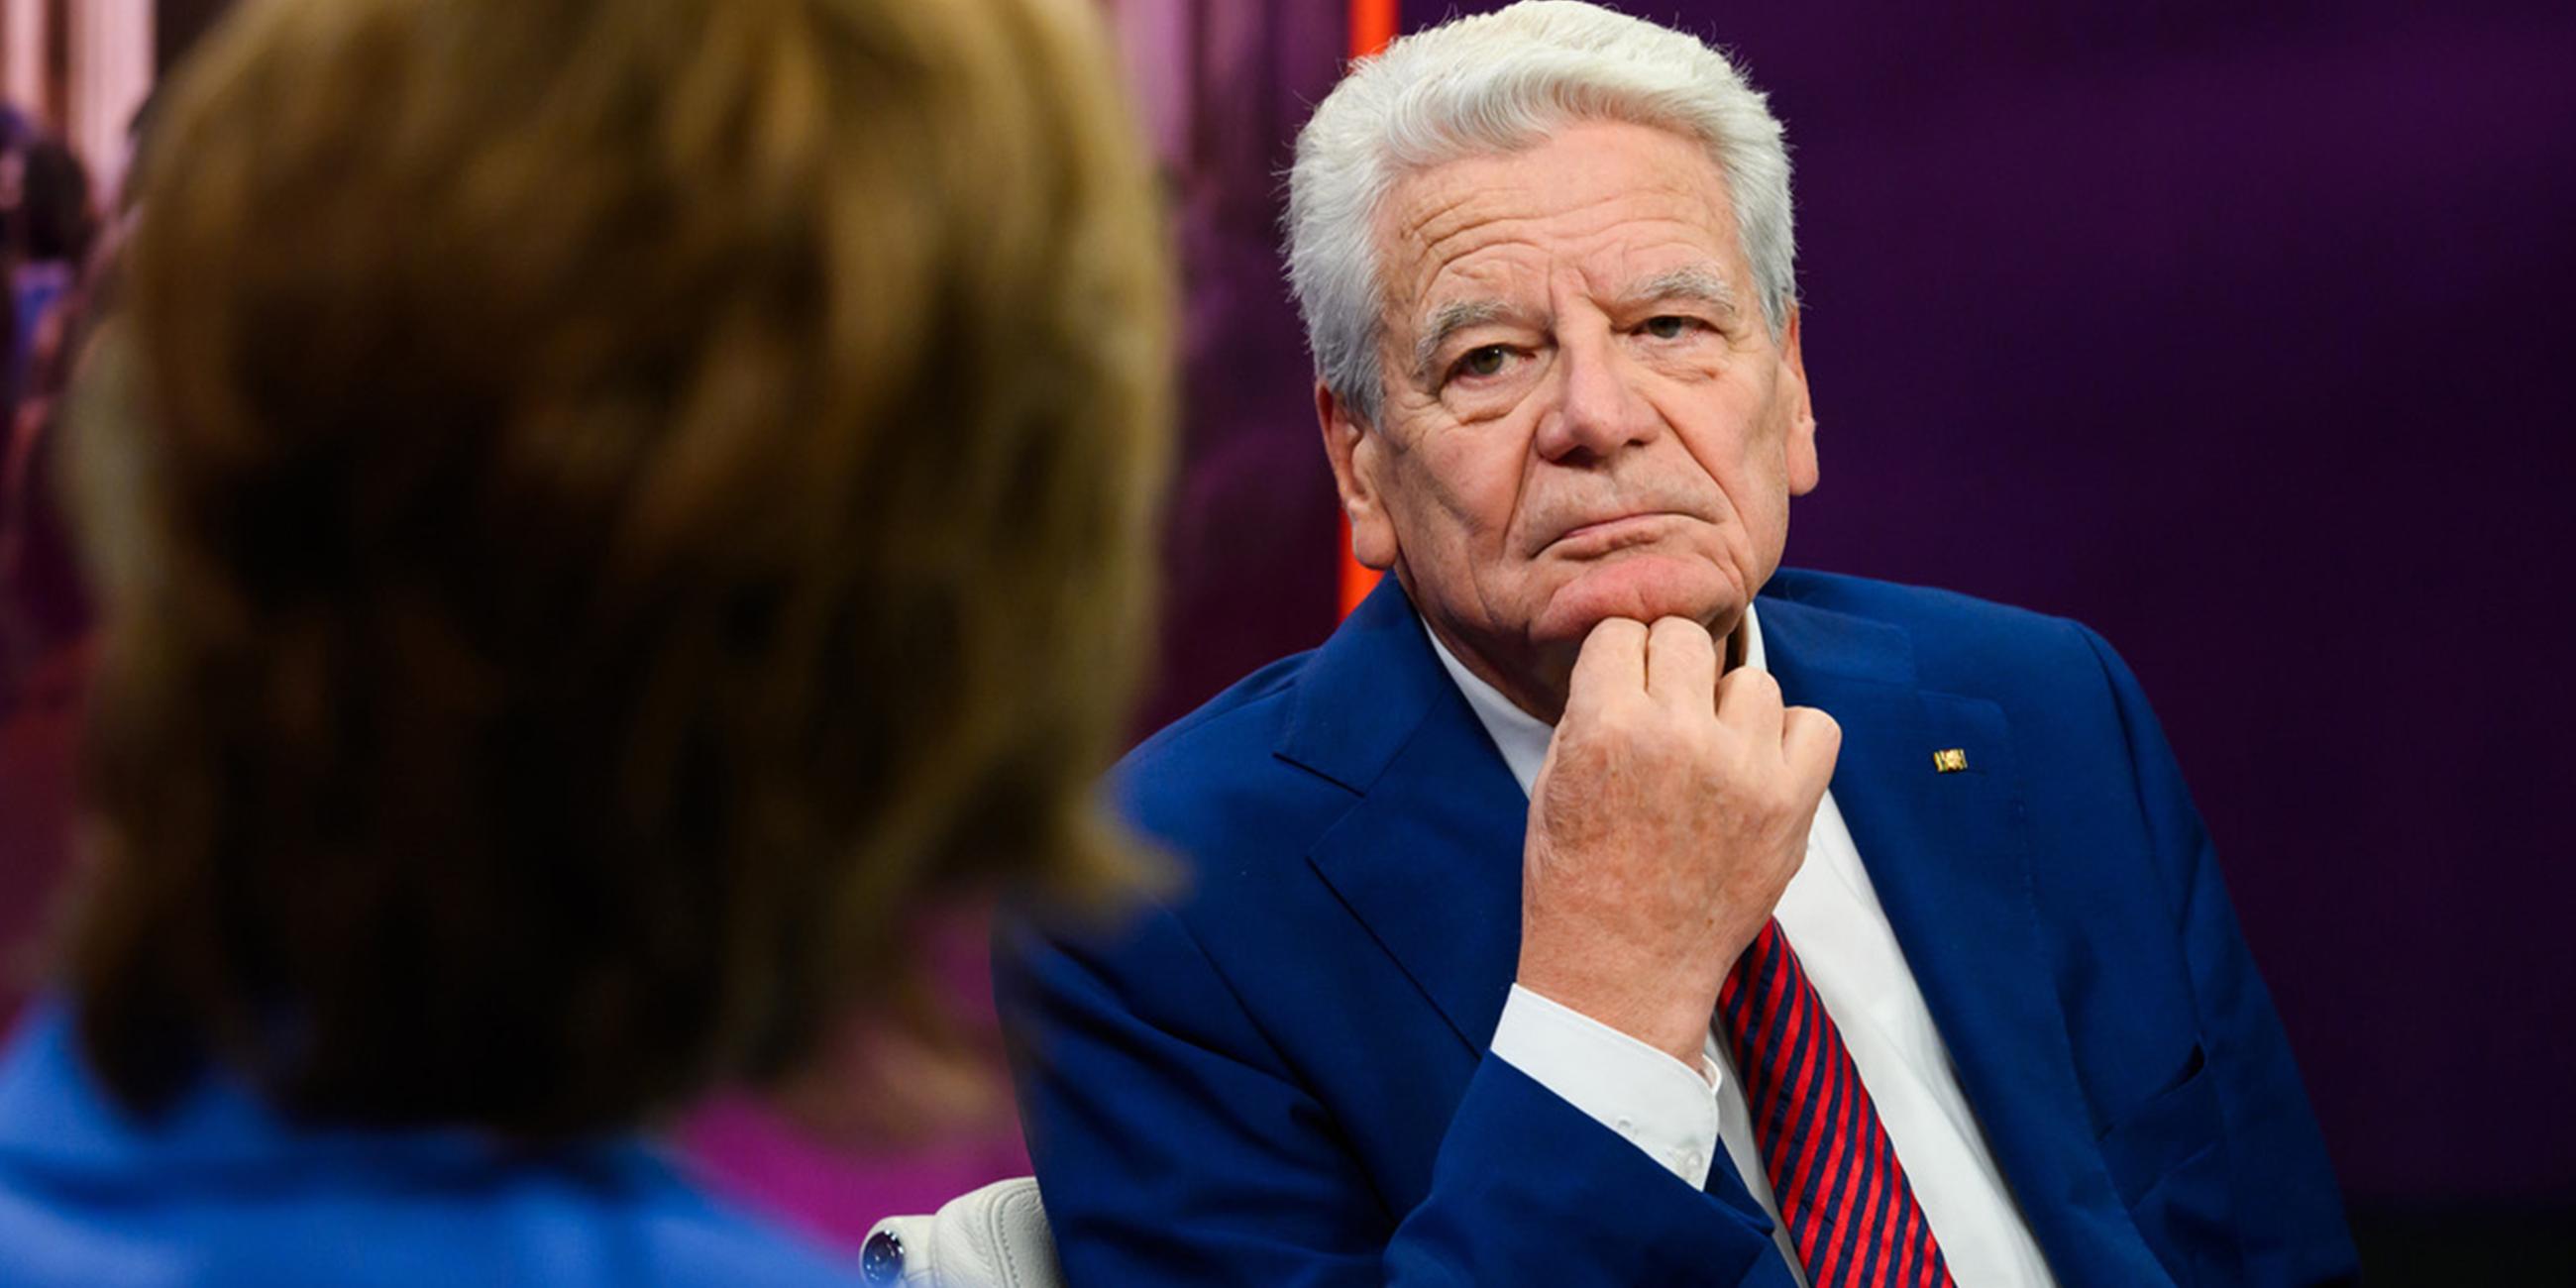 Bundespräsident a.D. Joachim Gauck zu Gast in der Sendung von Maybrit Illner.